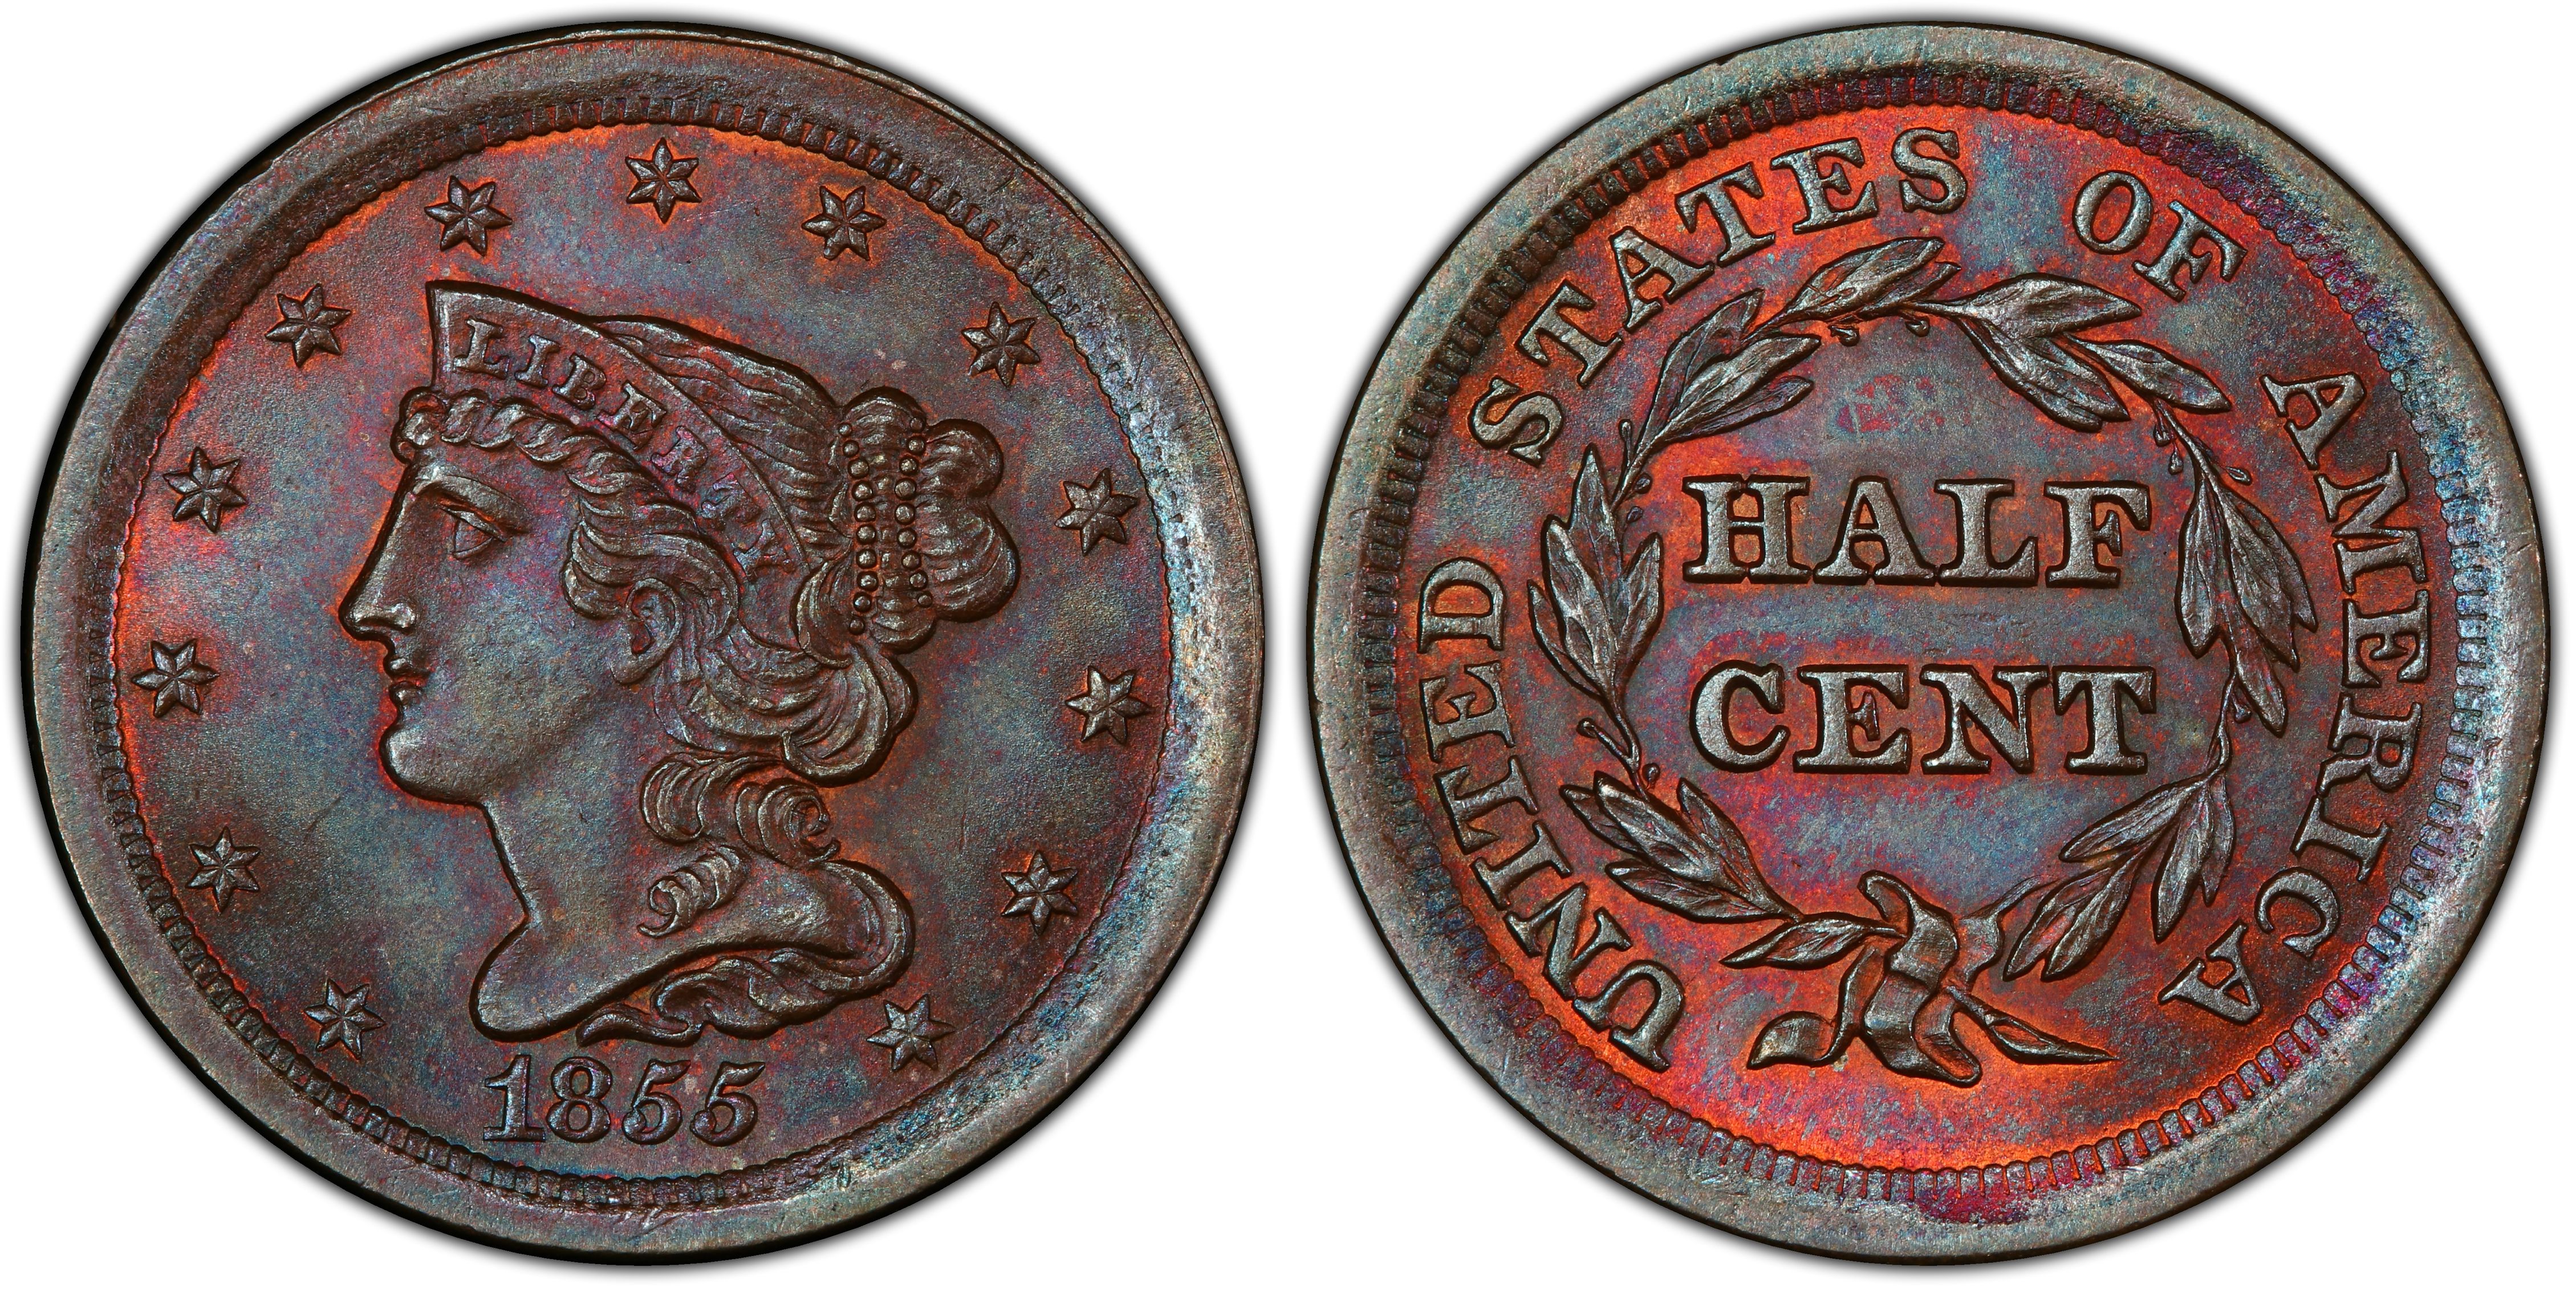 1855 Braided Hair Half Cent - PCGS XF45 w/True View - 56K Mintage